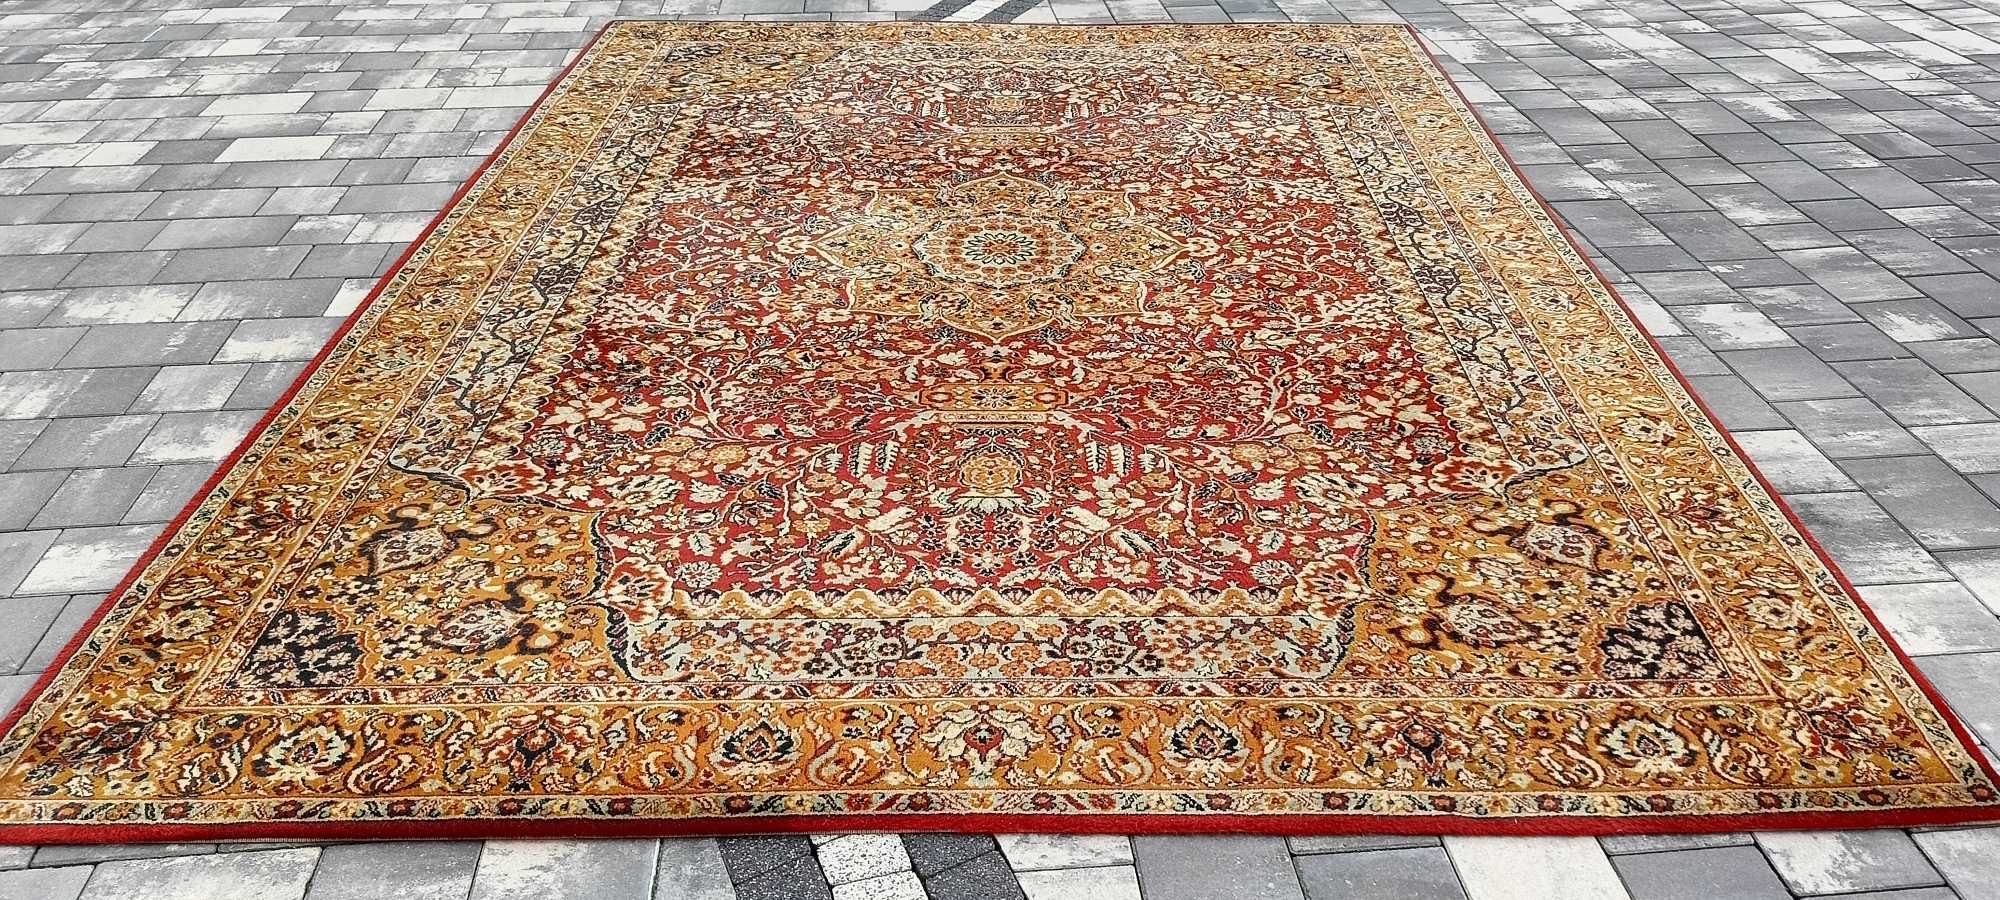 Cronwell Classica dywan wełniany piękny 350 x 250 cm wełna